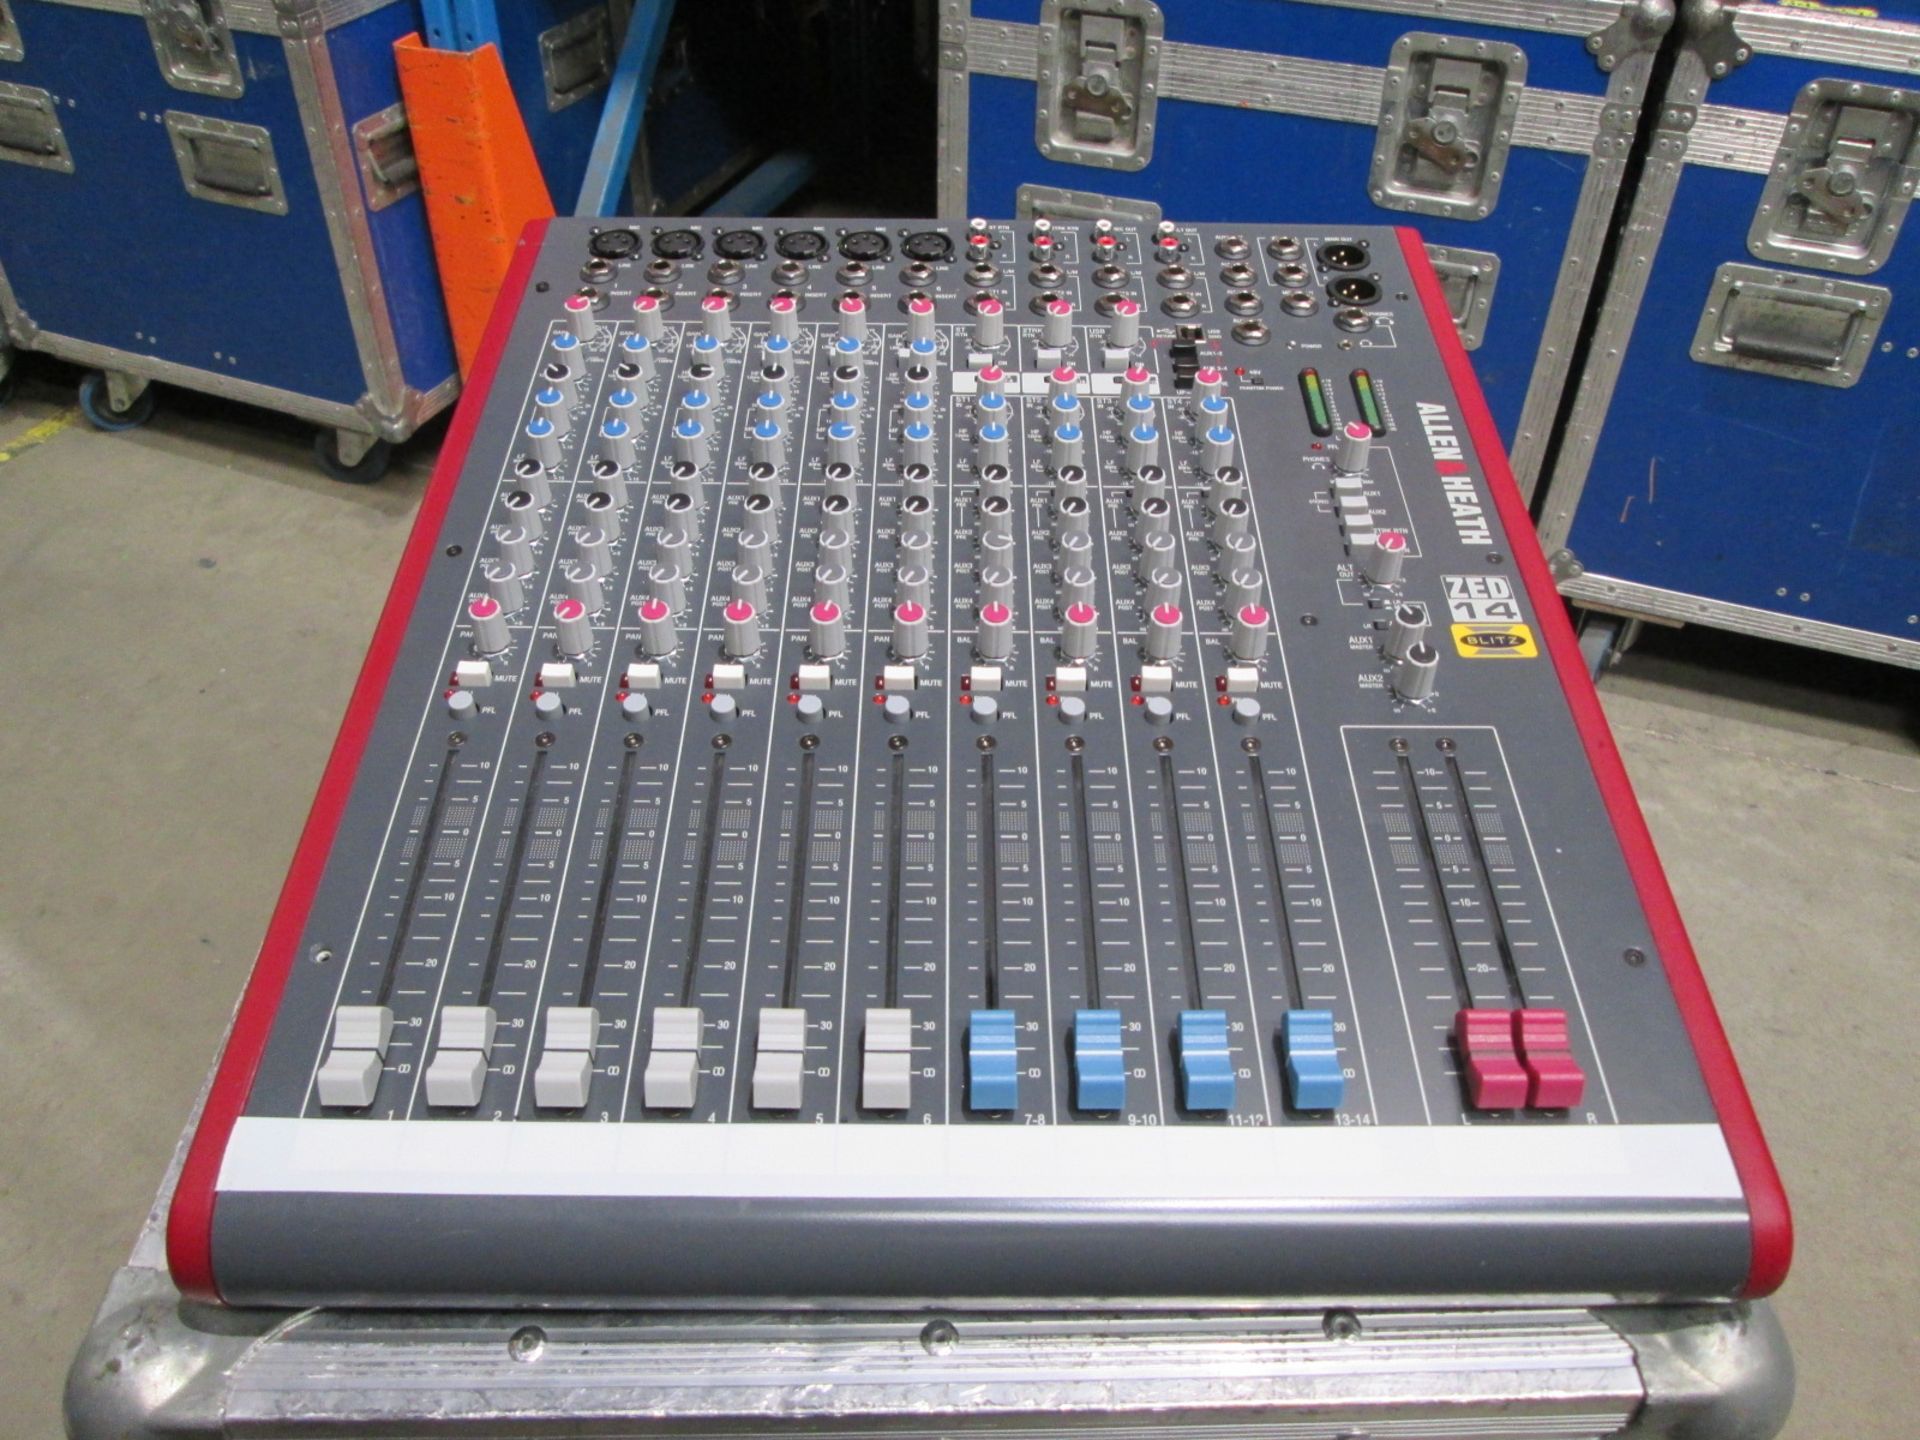 Allen & Heath Zed 14 Mixing Desk (6 x mono / 4 x stereo) S/N Z142X 446714. In flight case with